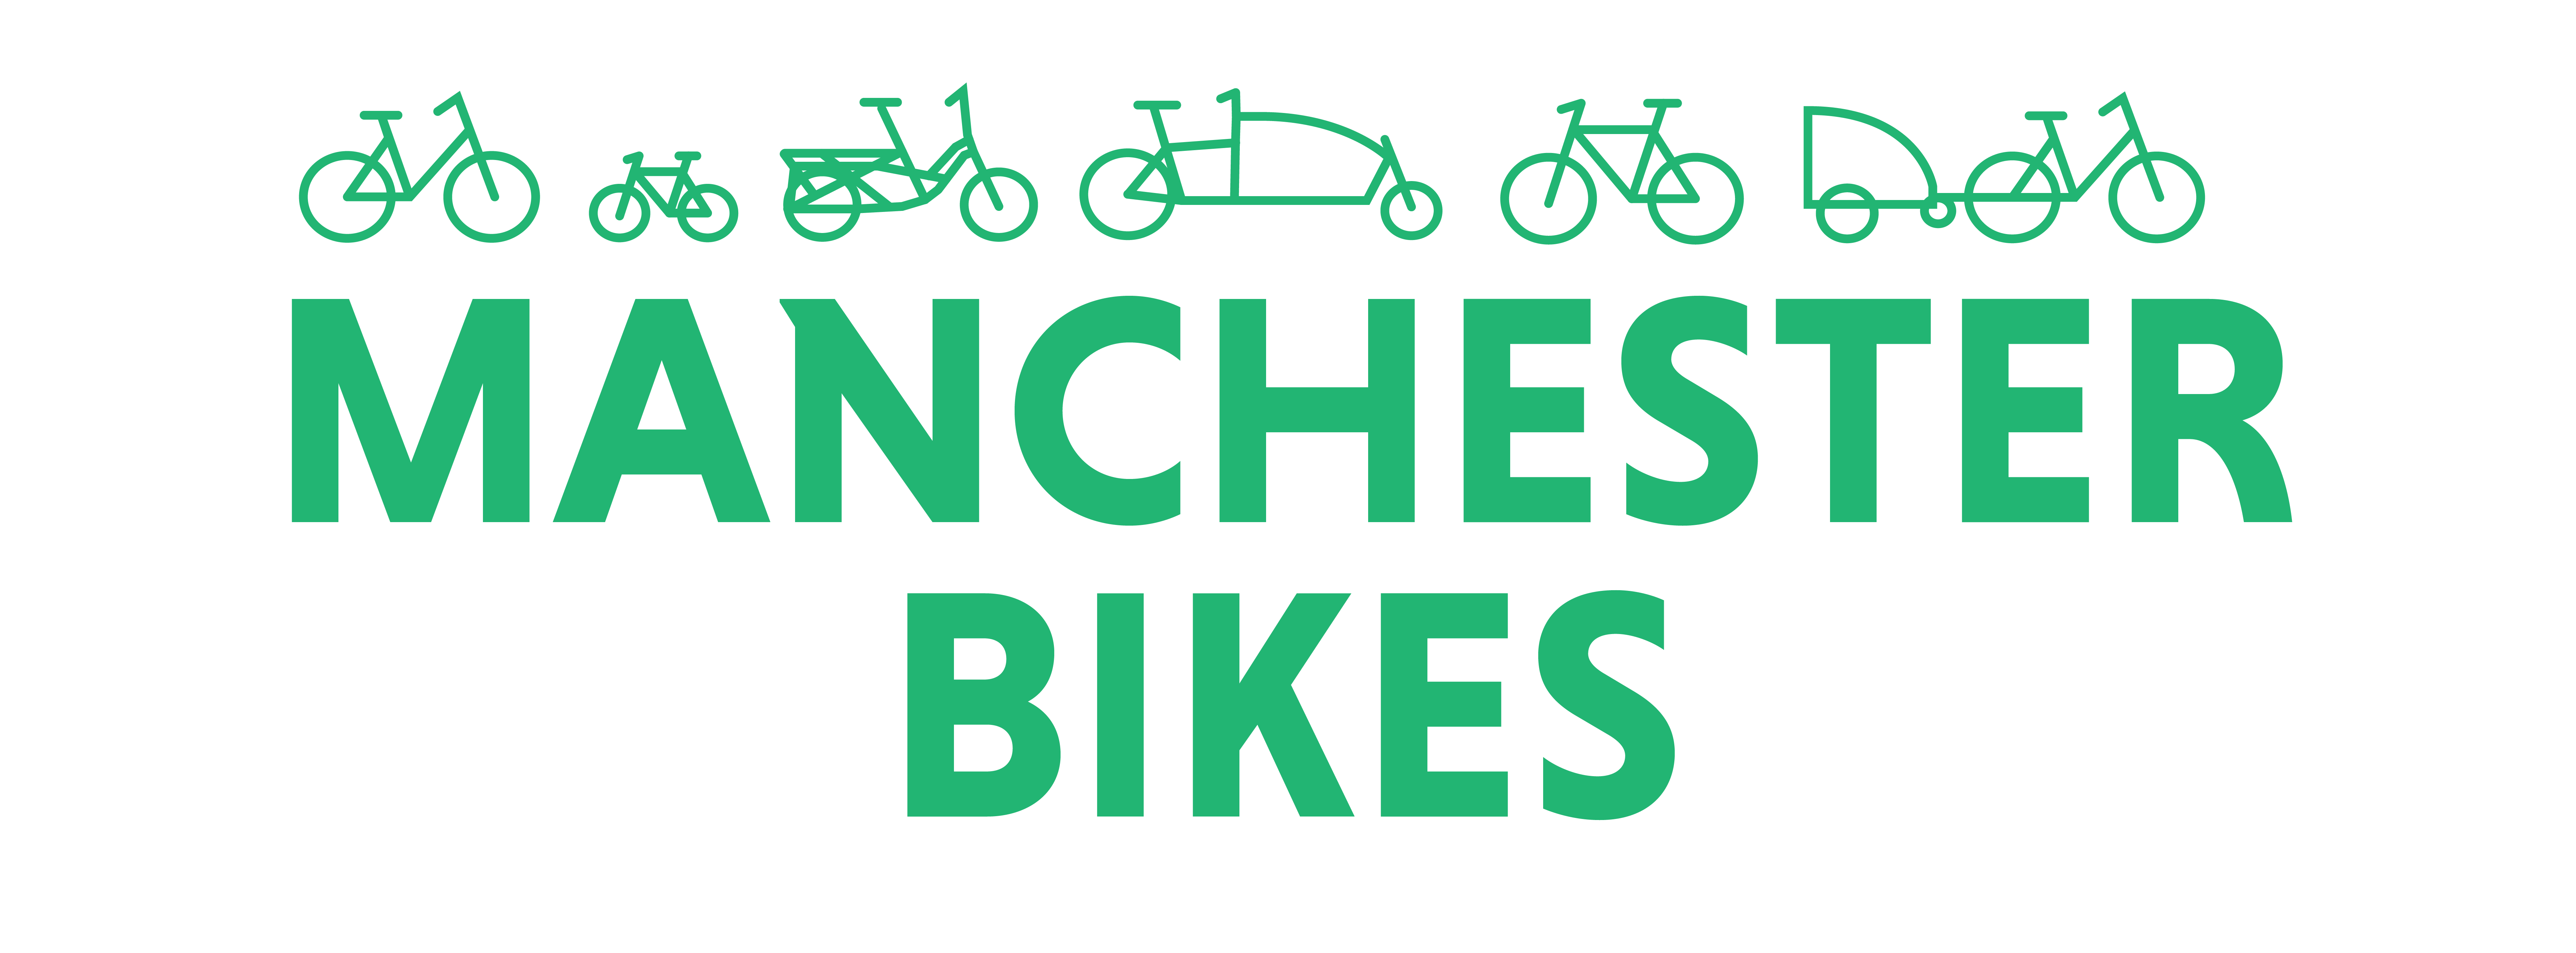 Manchester Bikes